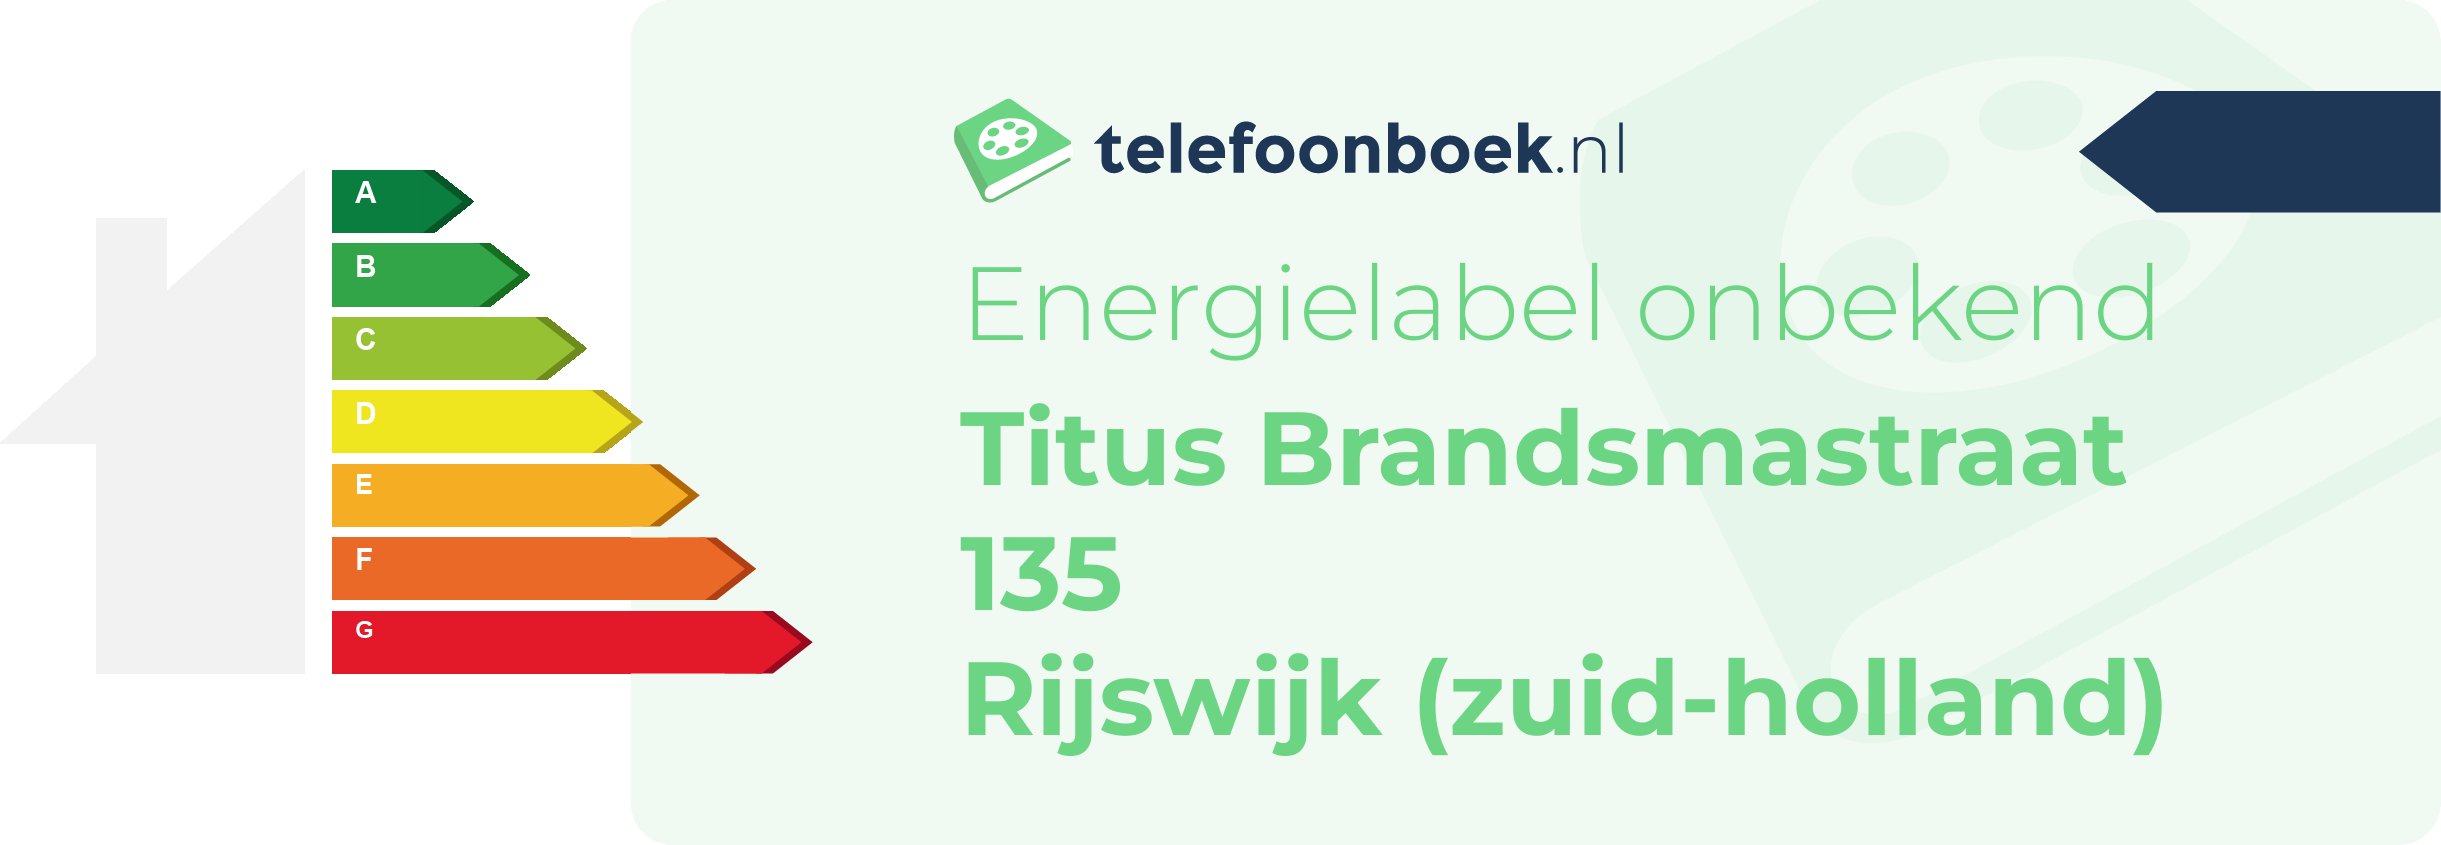 Energielabel Titus Brandsmastraat 135 Rijswijk (Zuid-Holland)